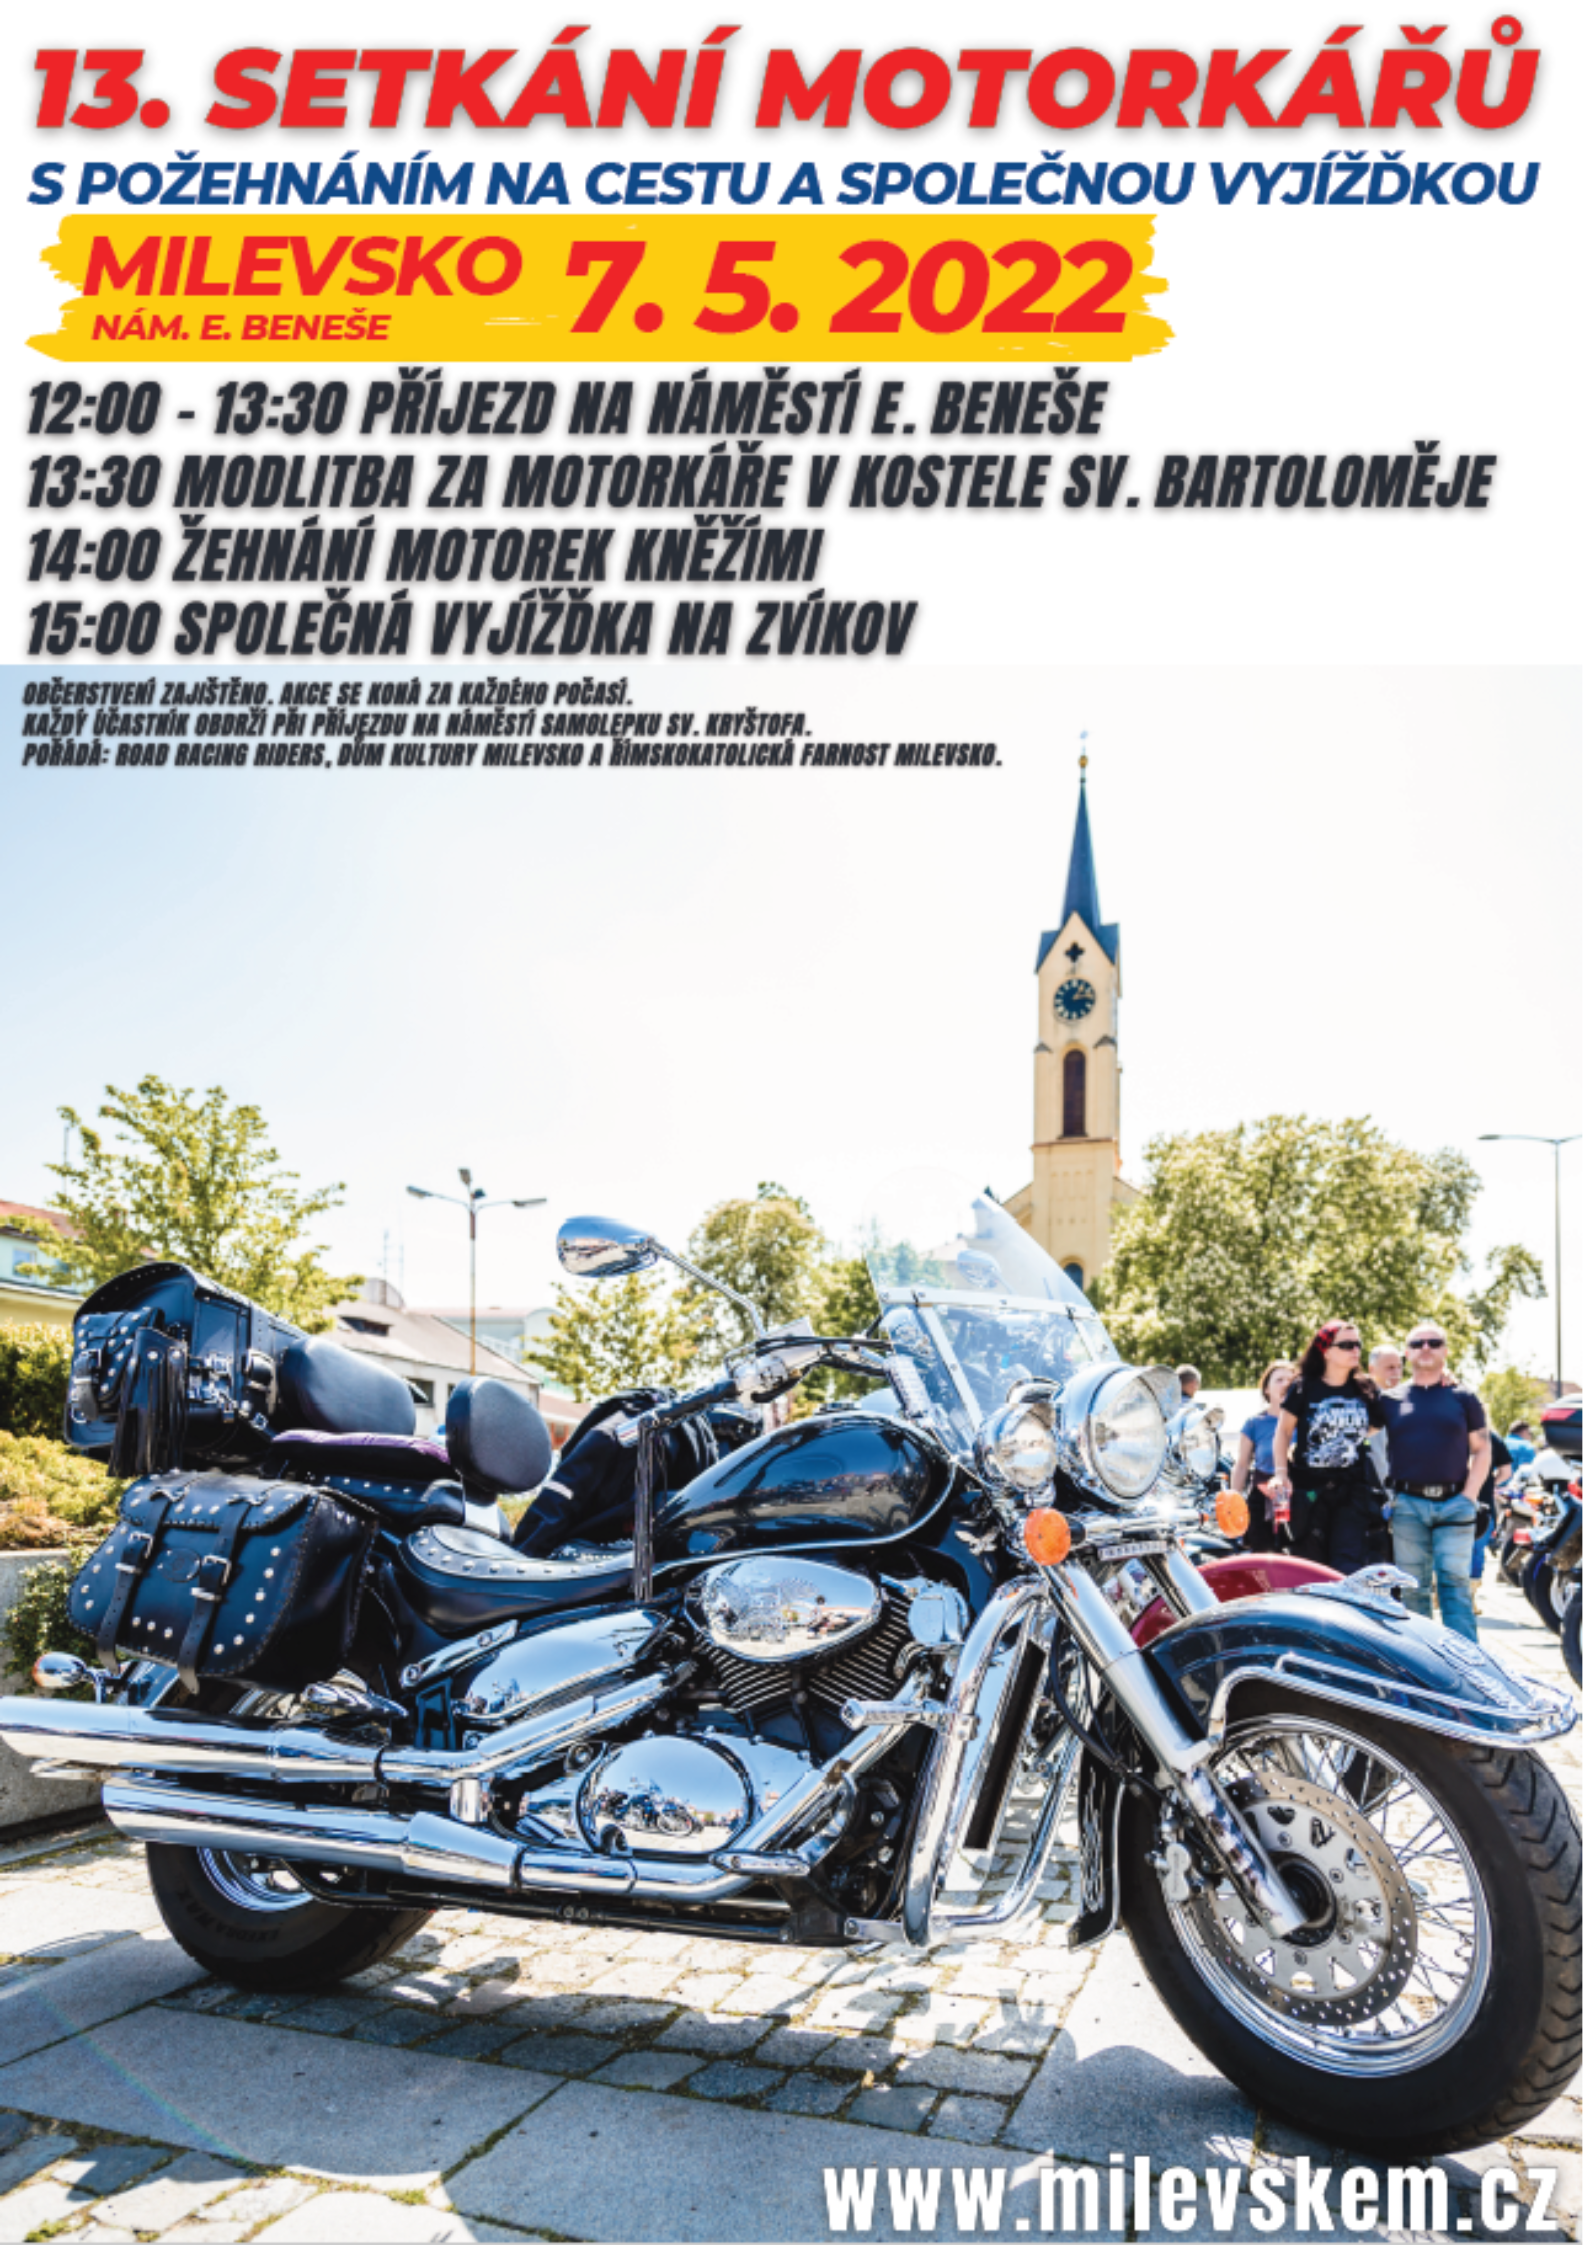 Plakát 13. Setkání motorkářů 